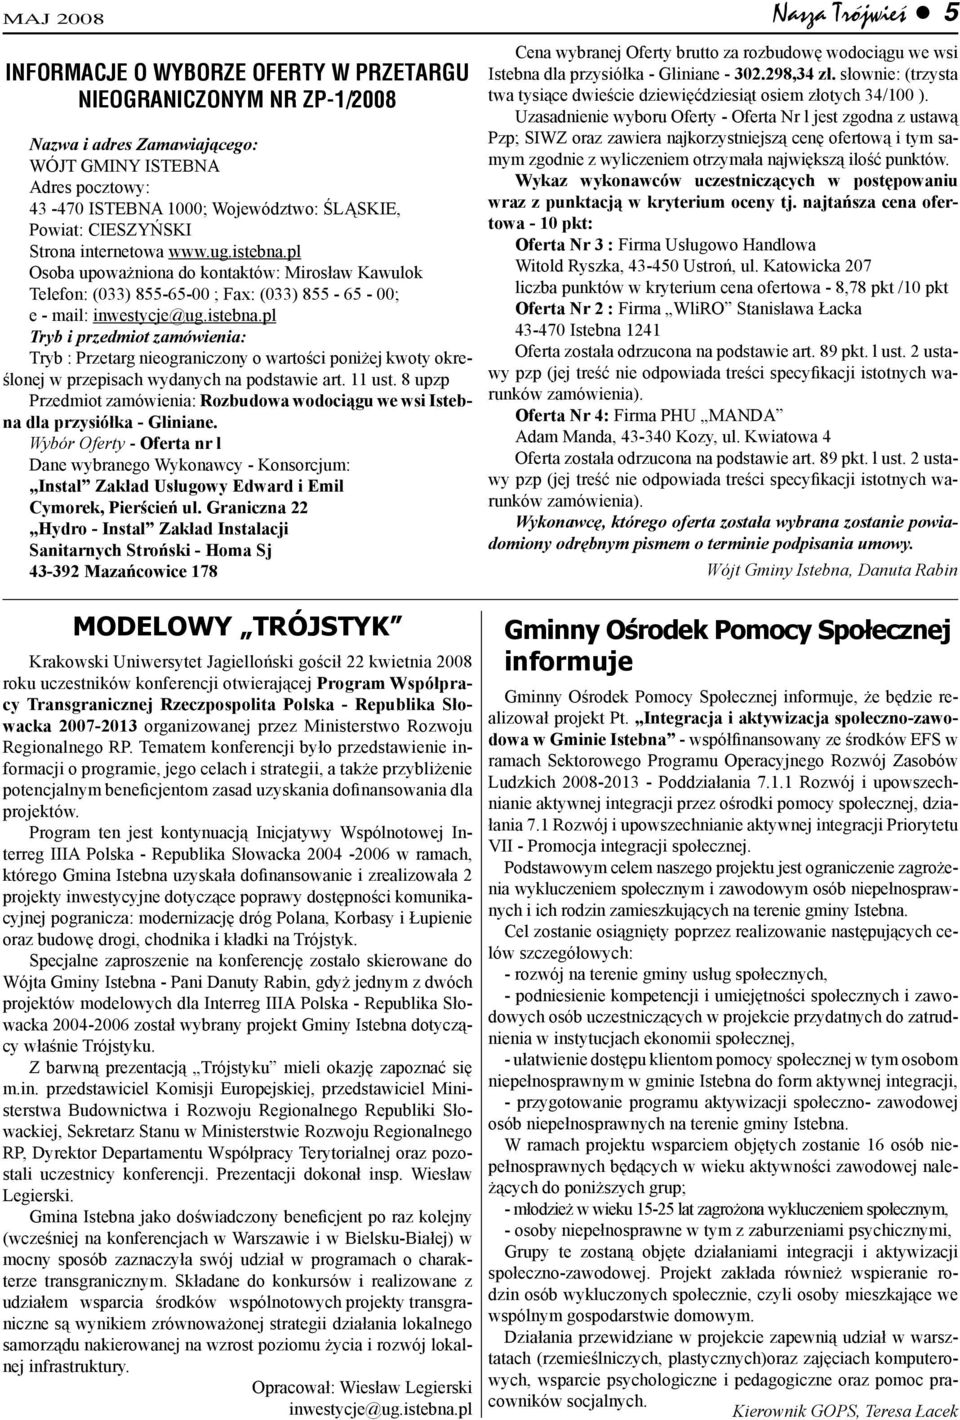 11 ust. 8 upzp Przedmiot zamówienia: Rozbudowa wodociągu we wsi Istebna dla przysiółka - Gliniane.